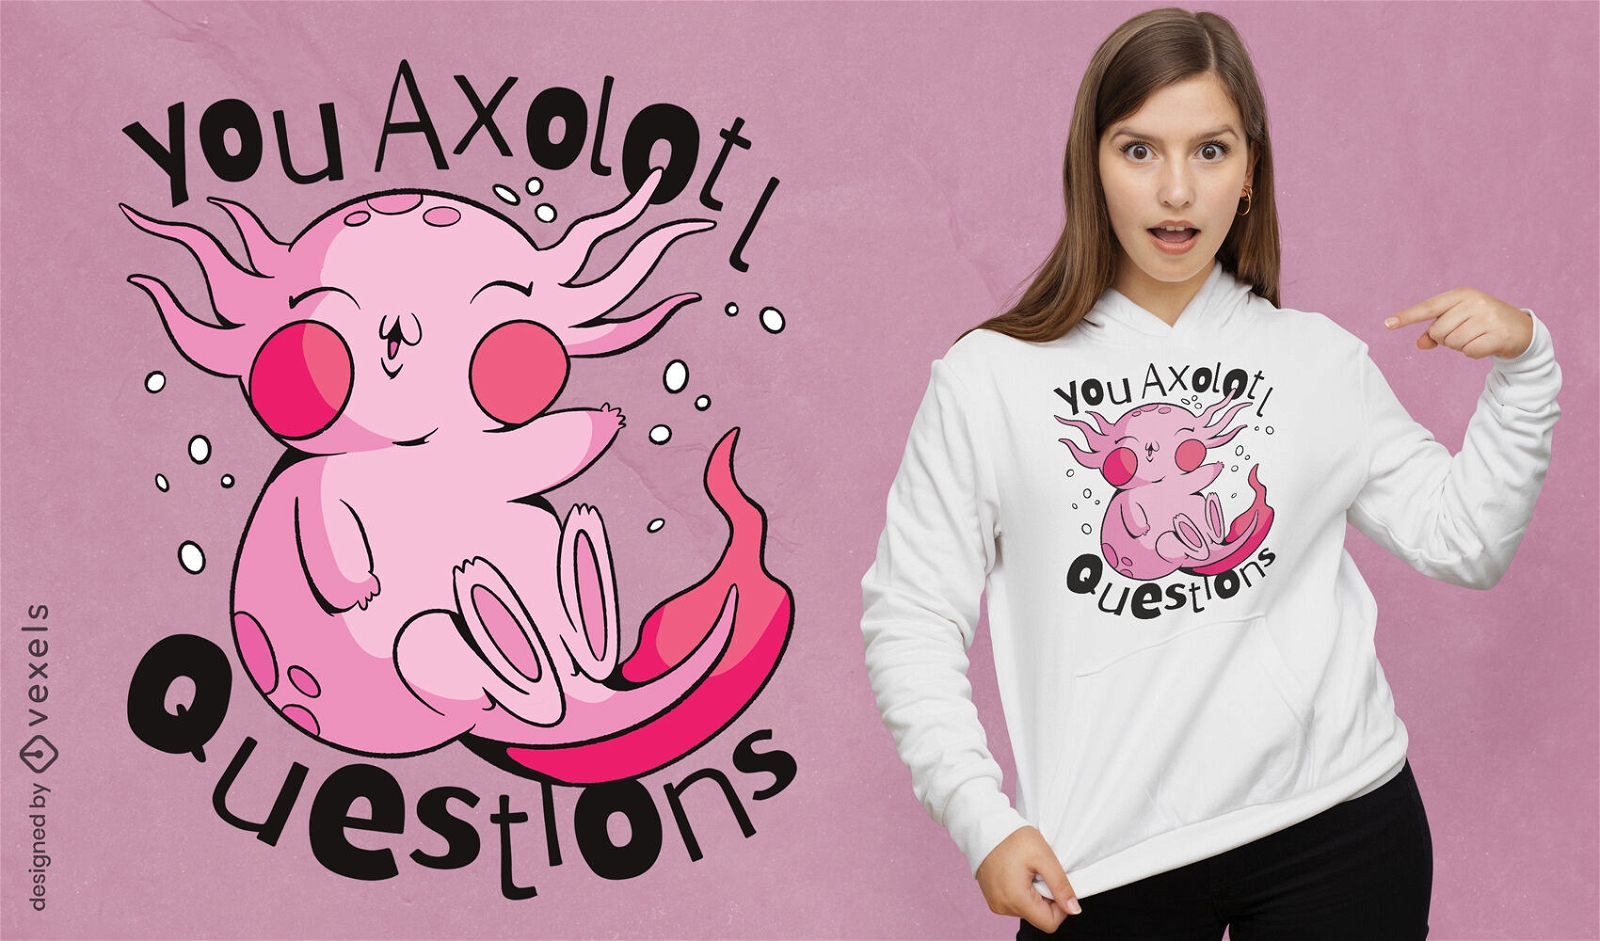 Axolotl questions funny t-shirt design